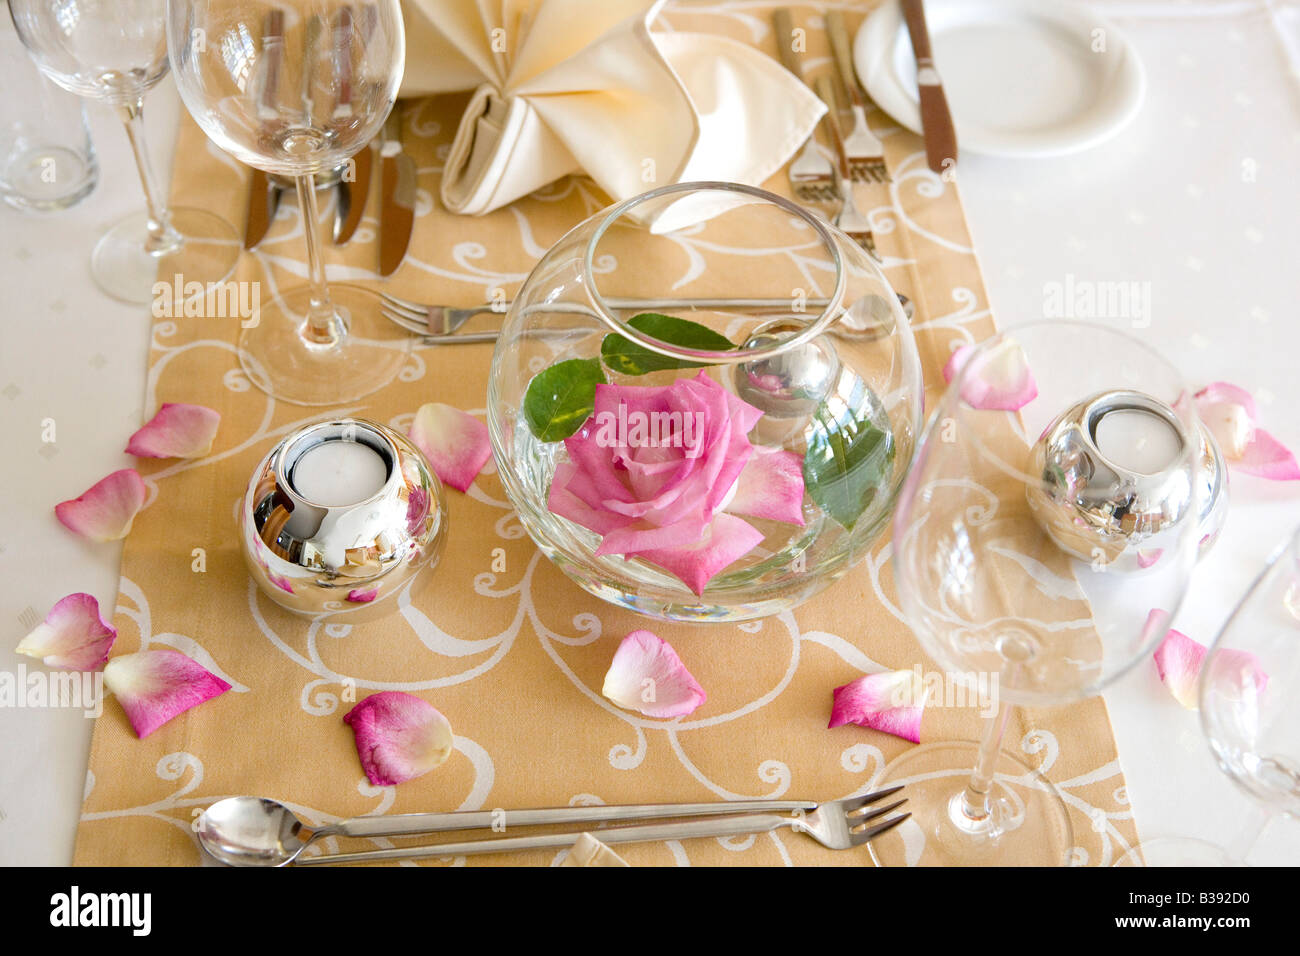 Tischdekoration in einem Hotel, table decoration Stock Photo